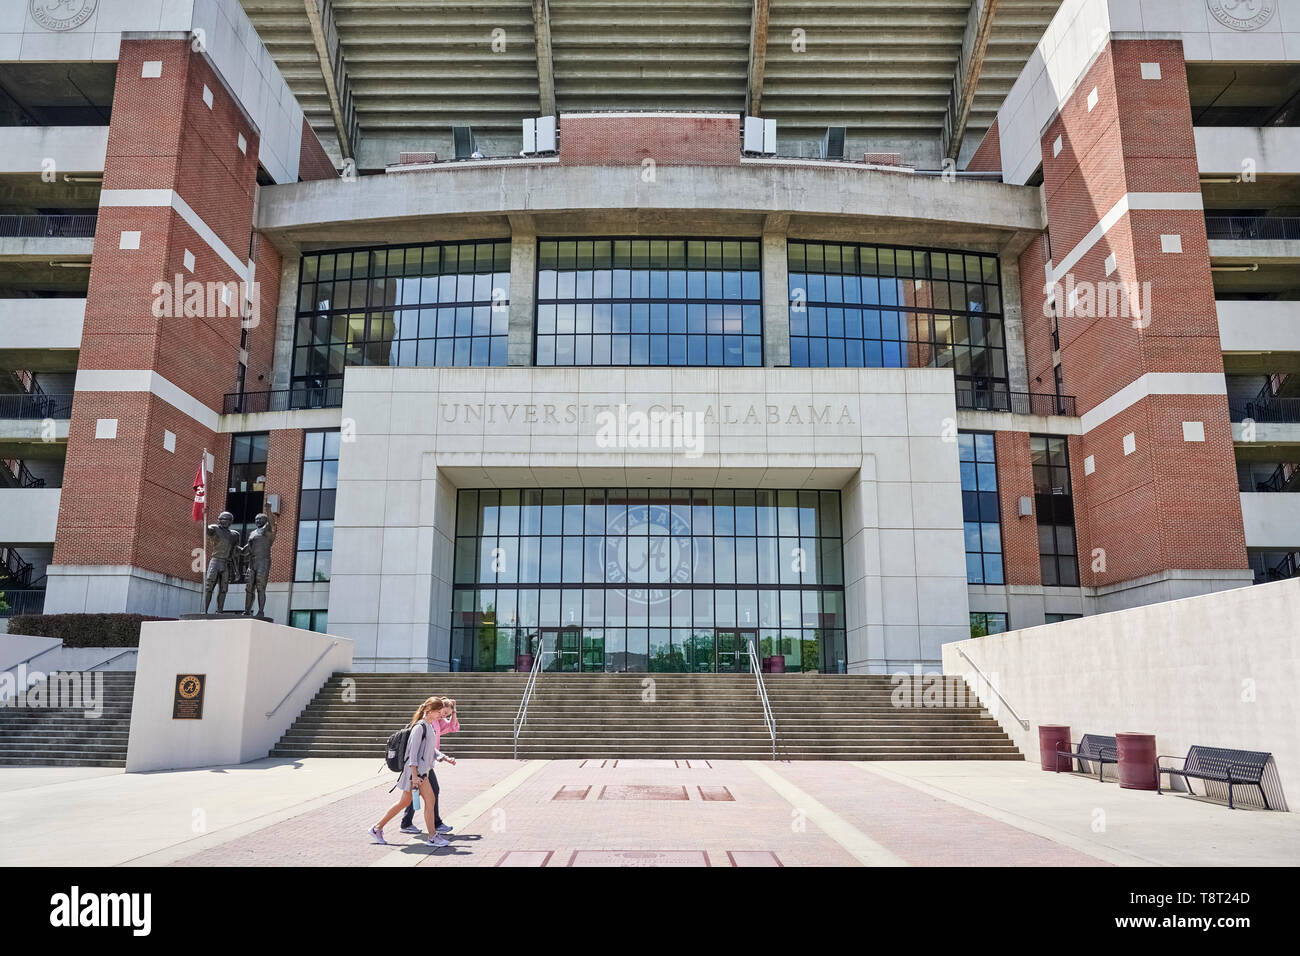 Vordere äußere Eingang zu Bryant - Denny Stadium, das Fußball-Stadion, für die Universität von Alabama in Tuscaloosa Alabama, USA. Stockfoto